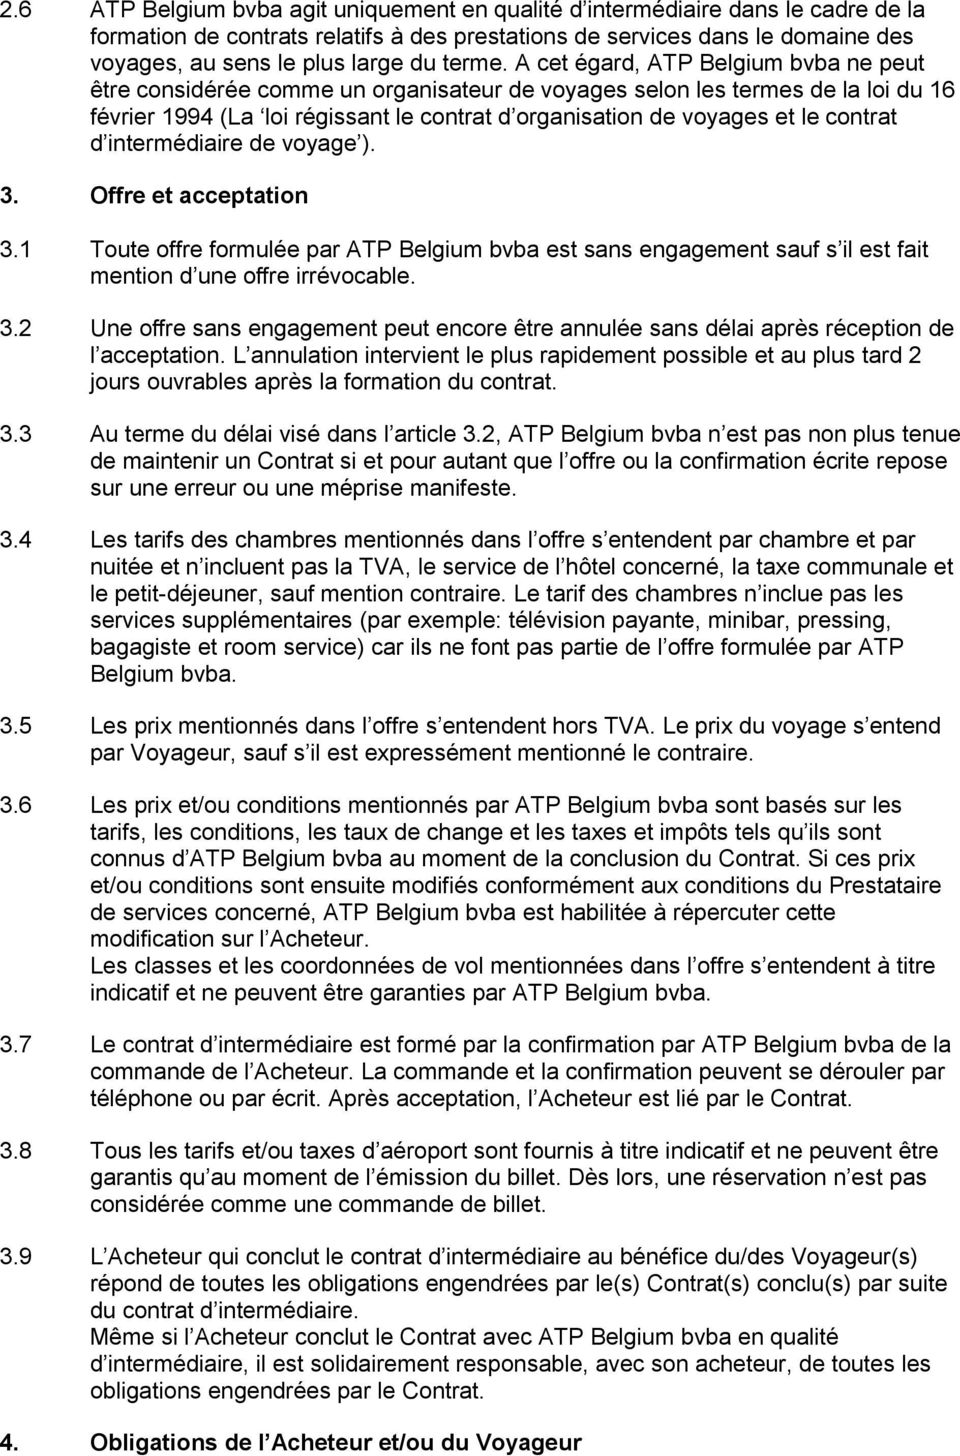 A cet égard, ATP Belgium bvba ne peut être considérée comme un organisateur de voyages selon les termes de la loi du 16 février 1994 (La loi régissant le contrat d organisation de voyages et le